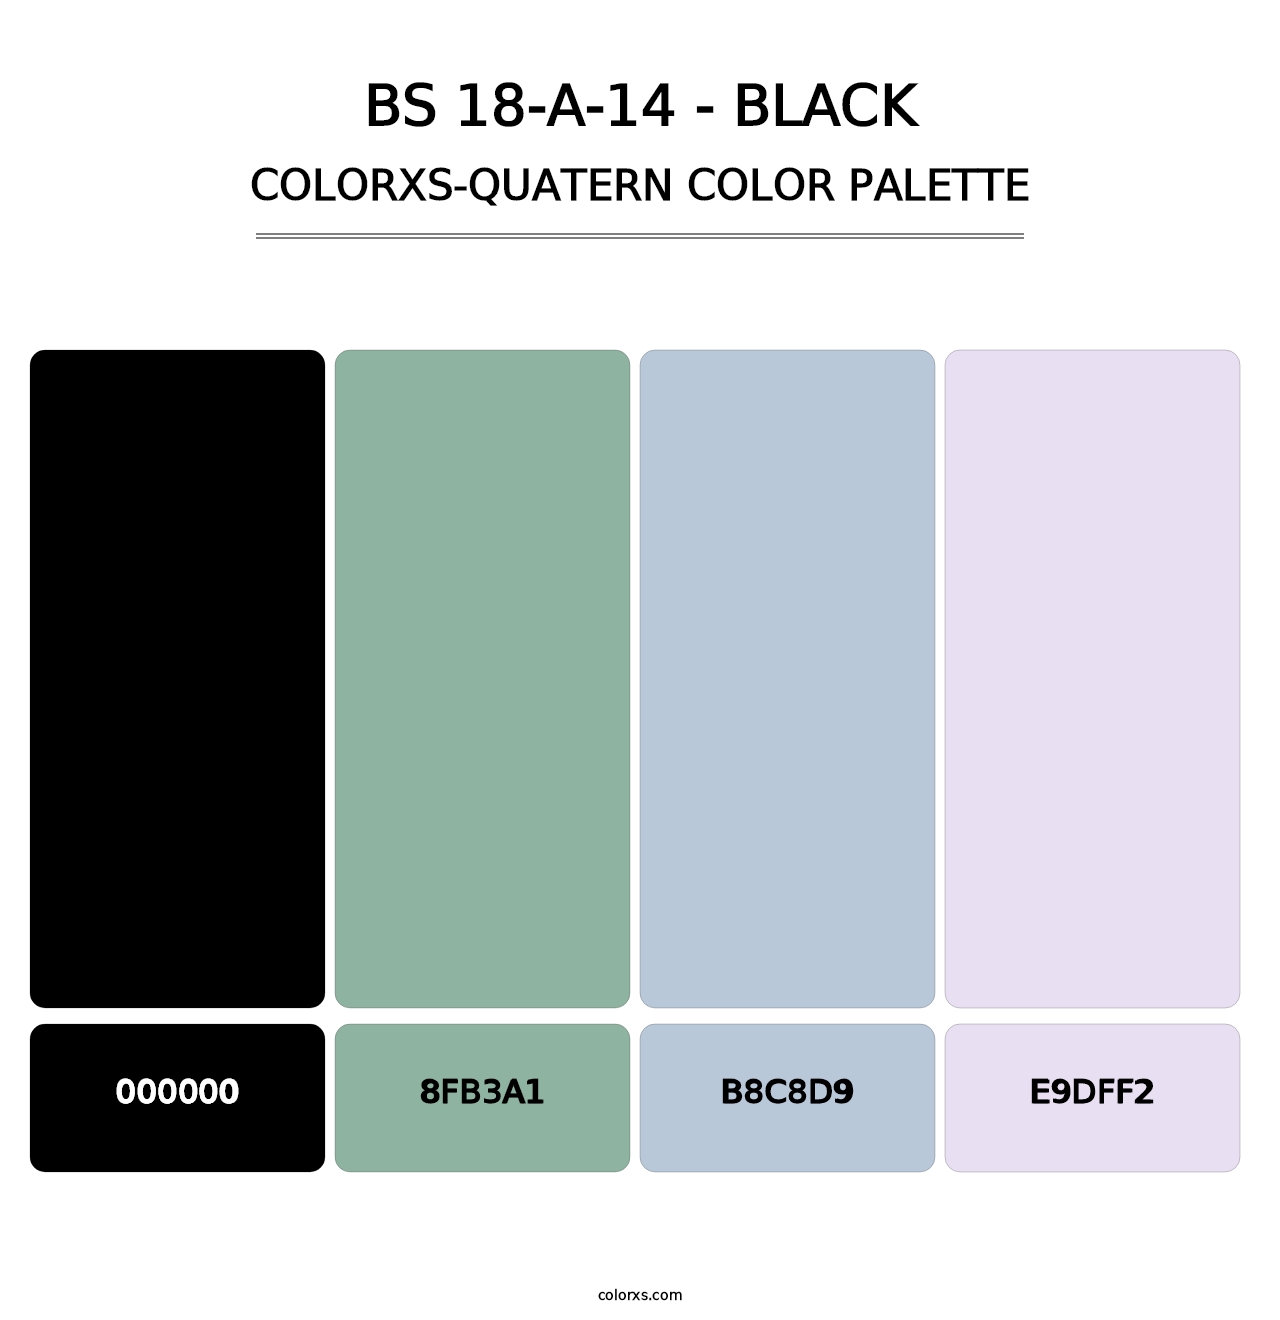 BS 18-A-14 - Black - Colorxs Quatern Palette